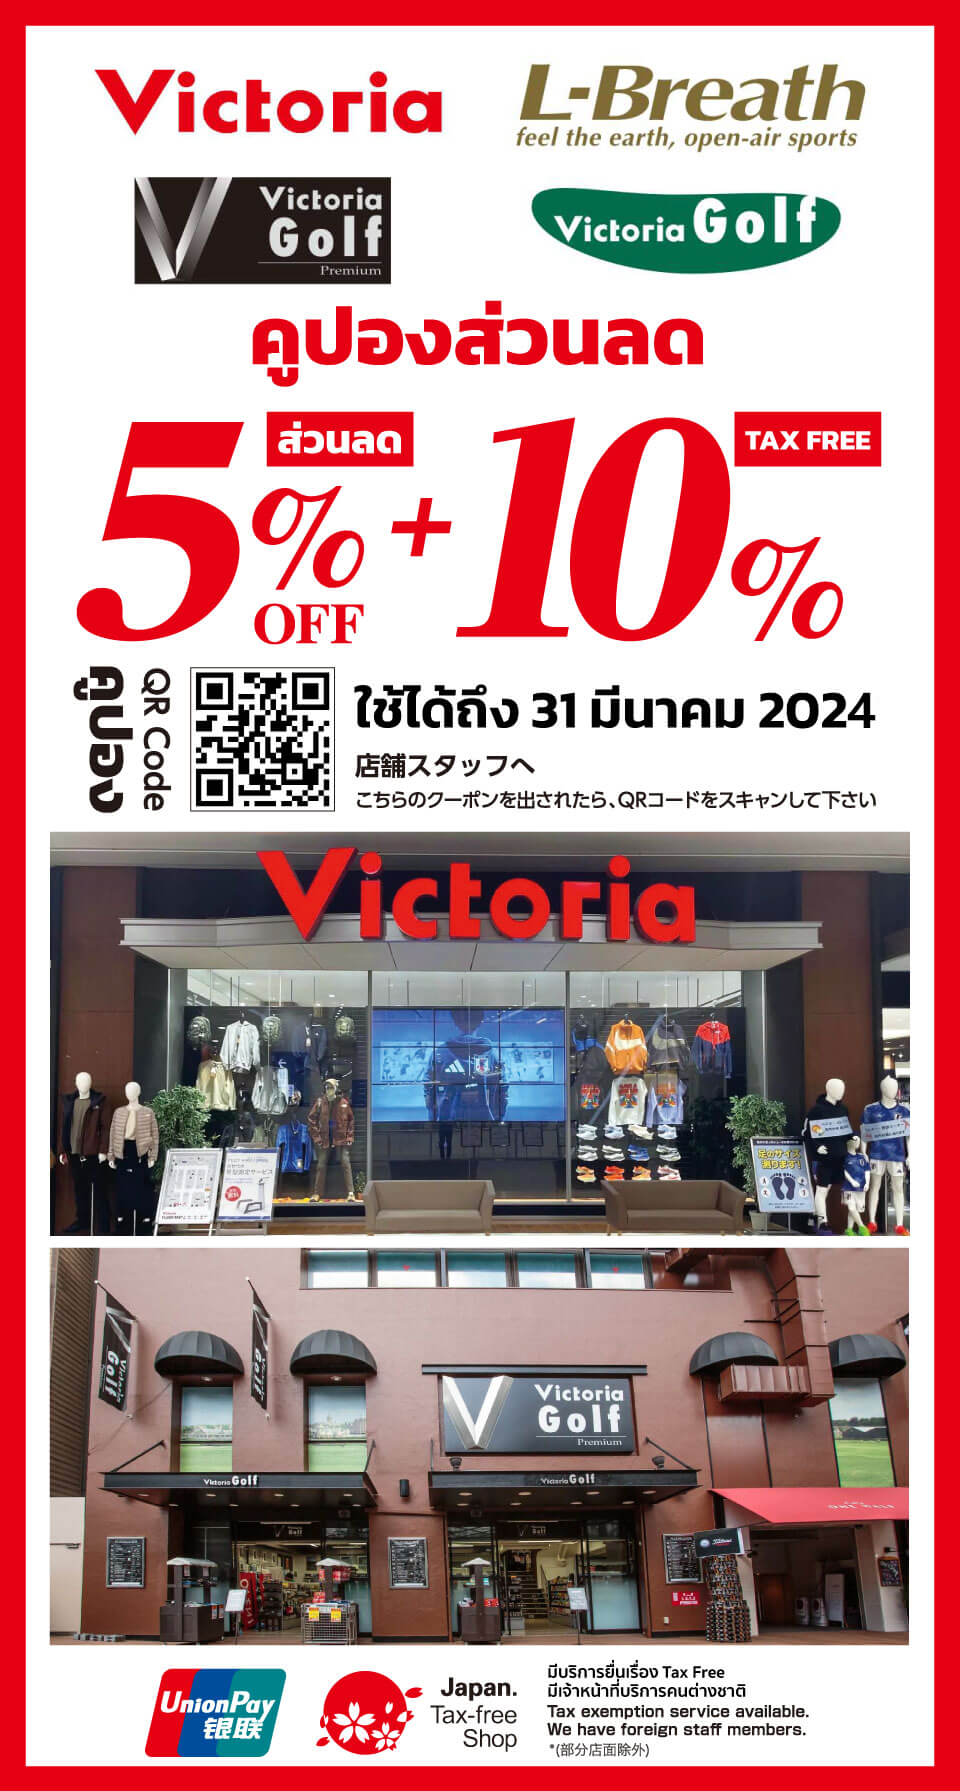 [คูปองส่วนลด] VictoriaGolf ร้านอุปกรณ์กีฬากอล์ฟในญี่ปุ่น พร้อมส่วนลด 5%